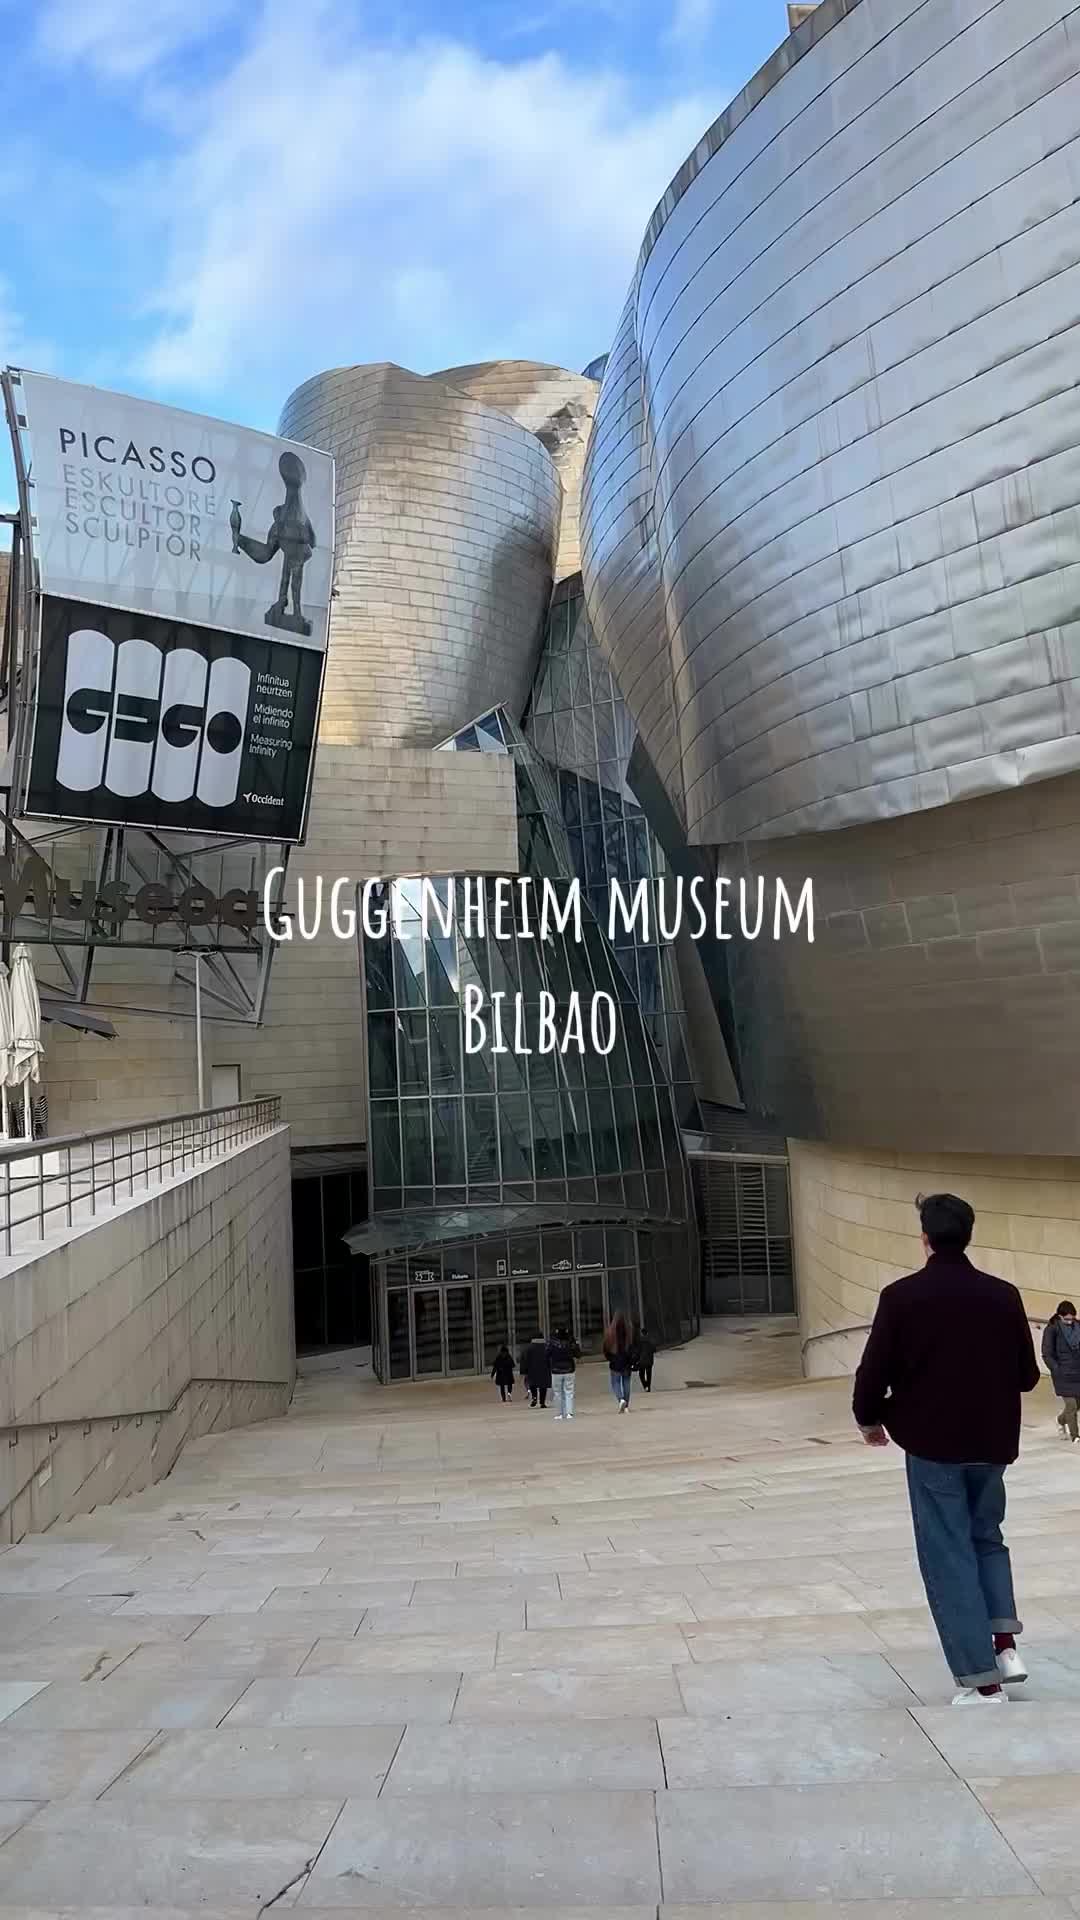 Guggenheim Museum Bilbao: A Must-See Art Destination